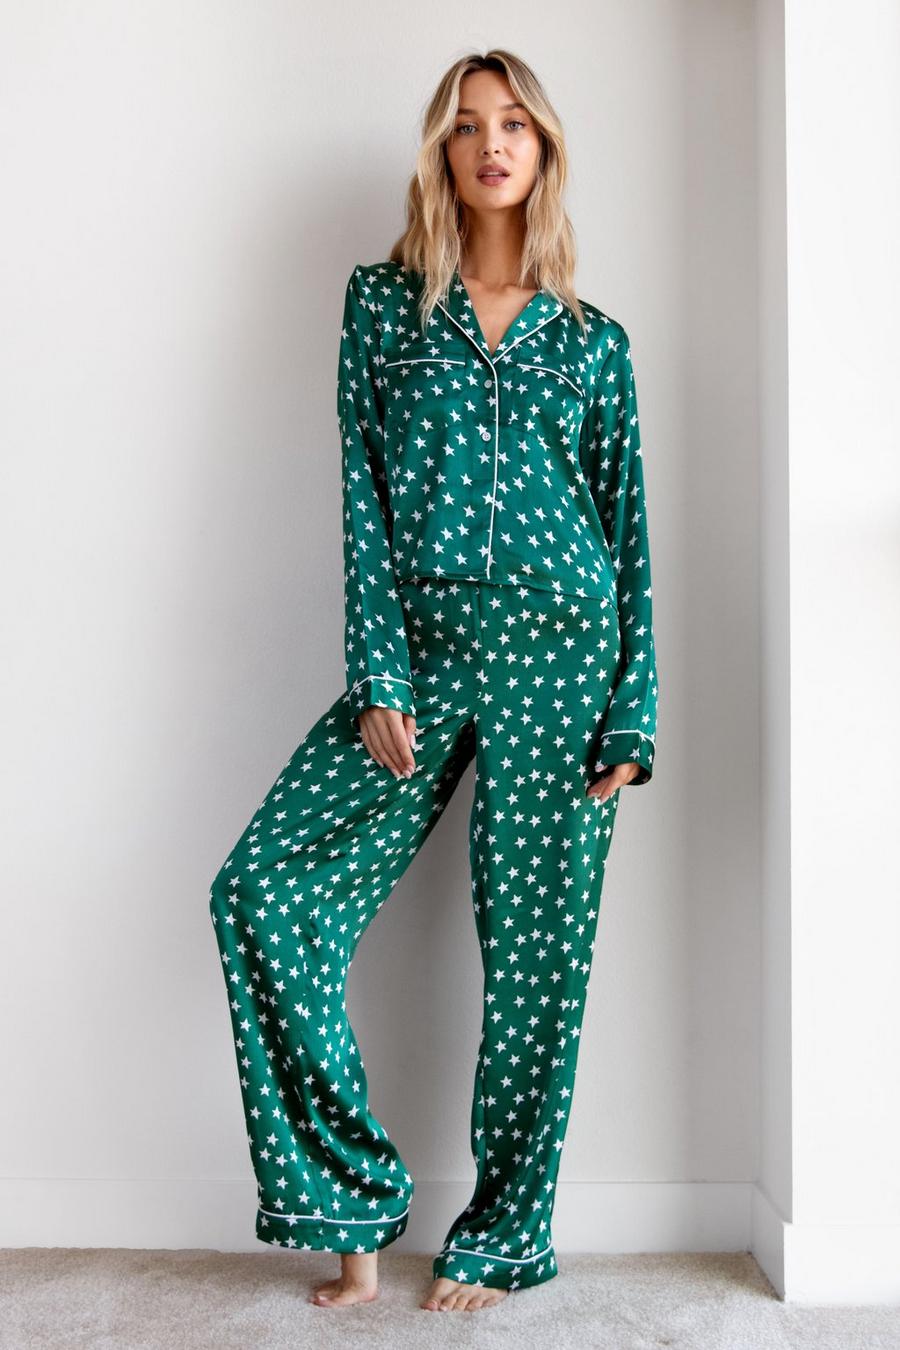 Star Satin Pyjama Shirt and Trousers Set